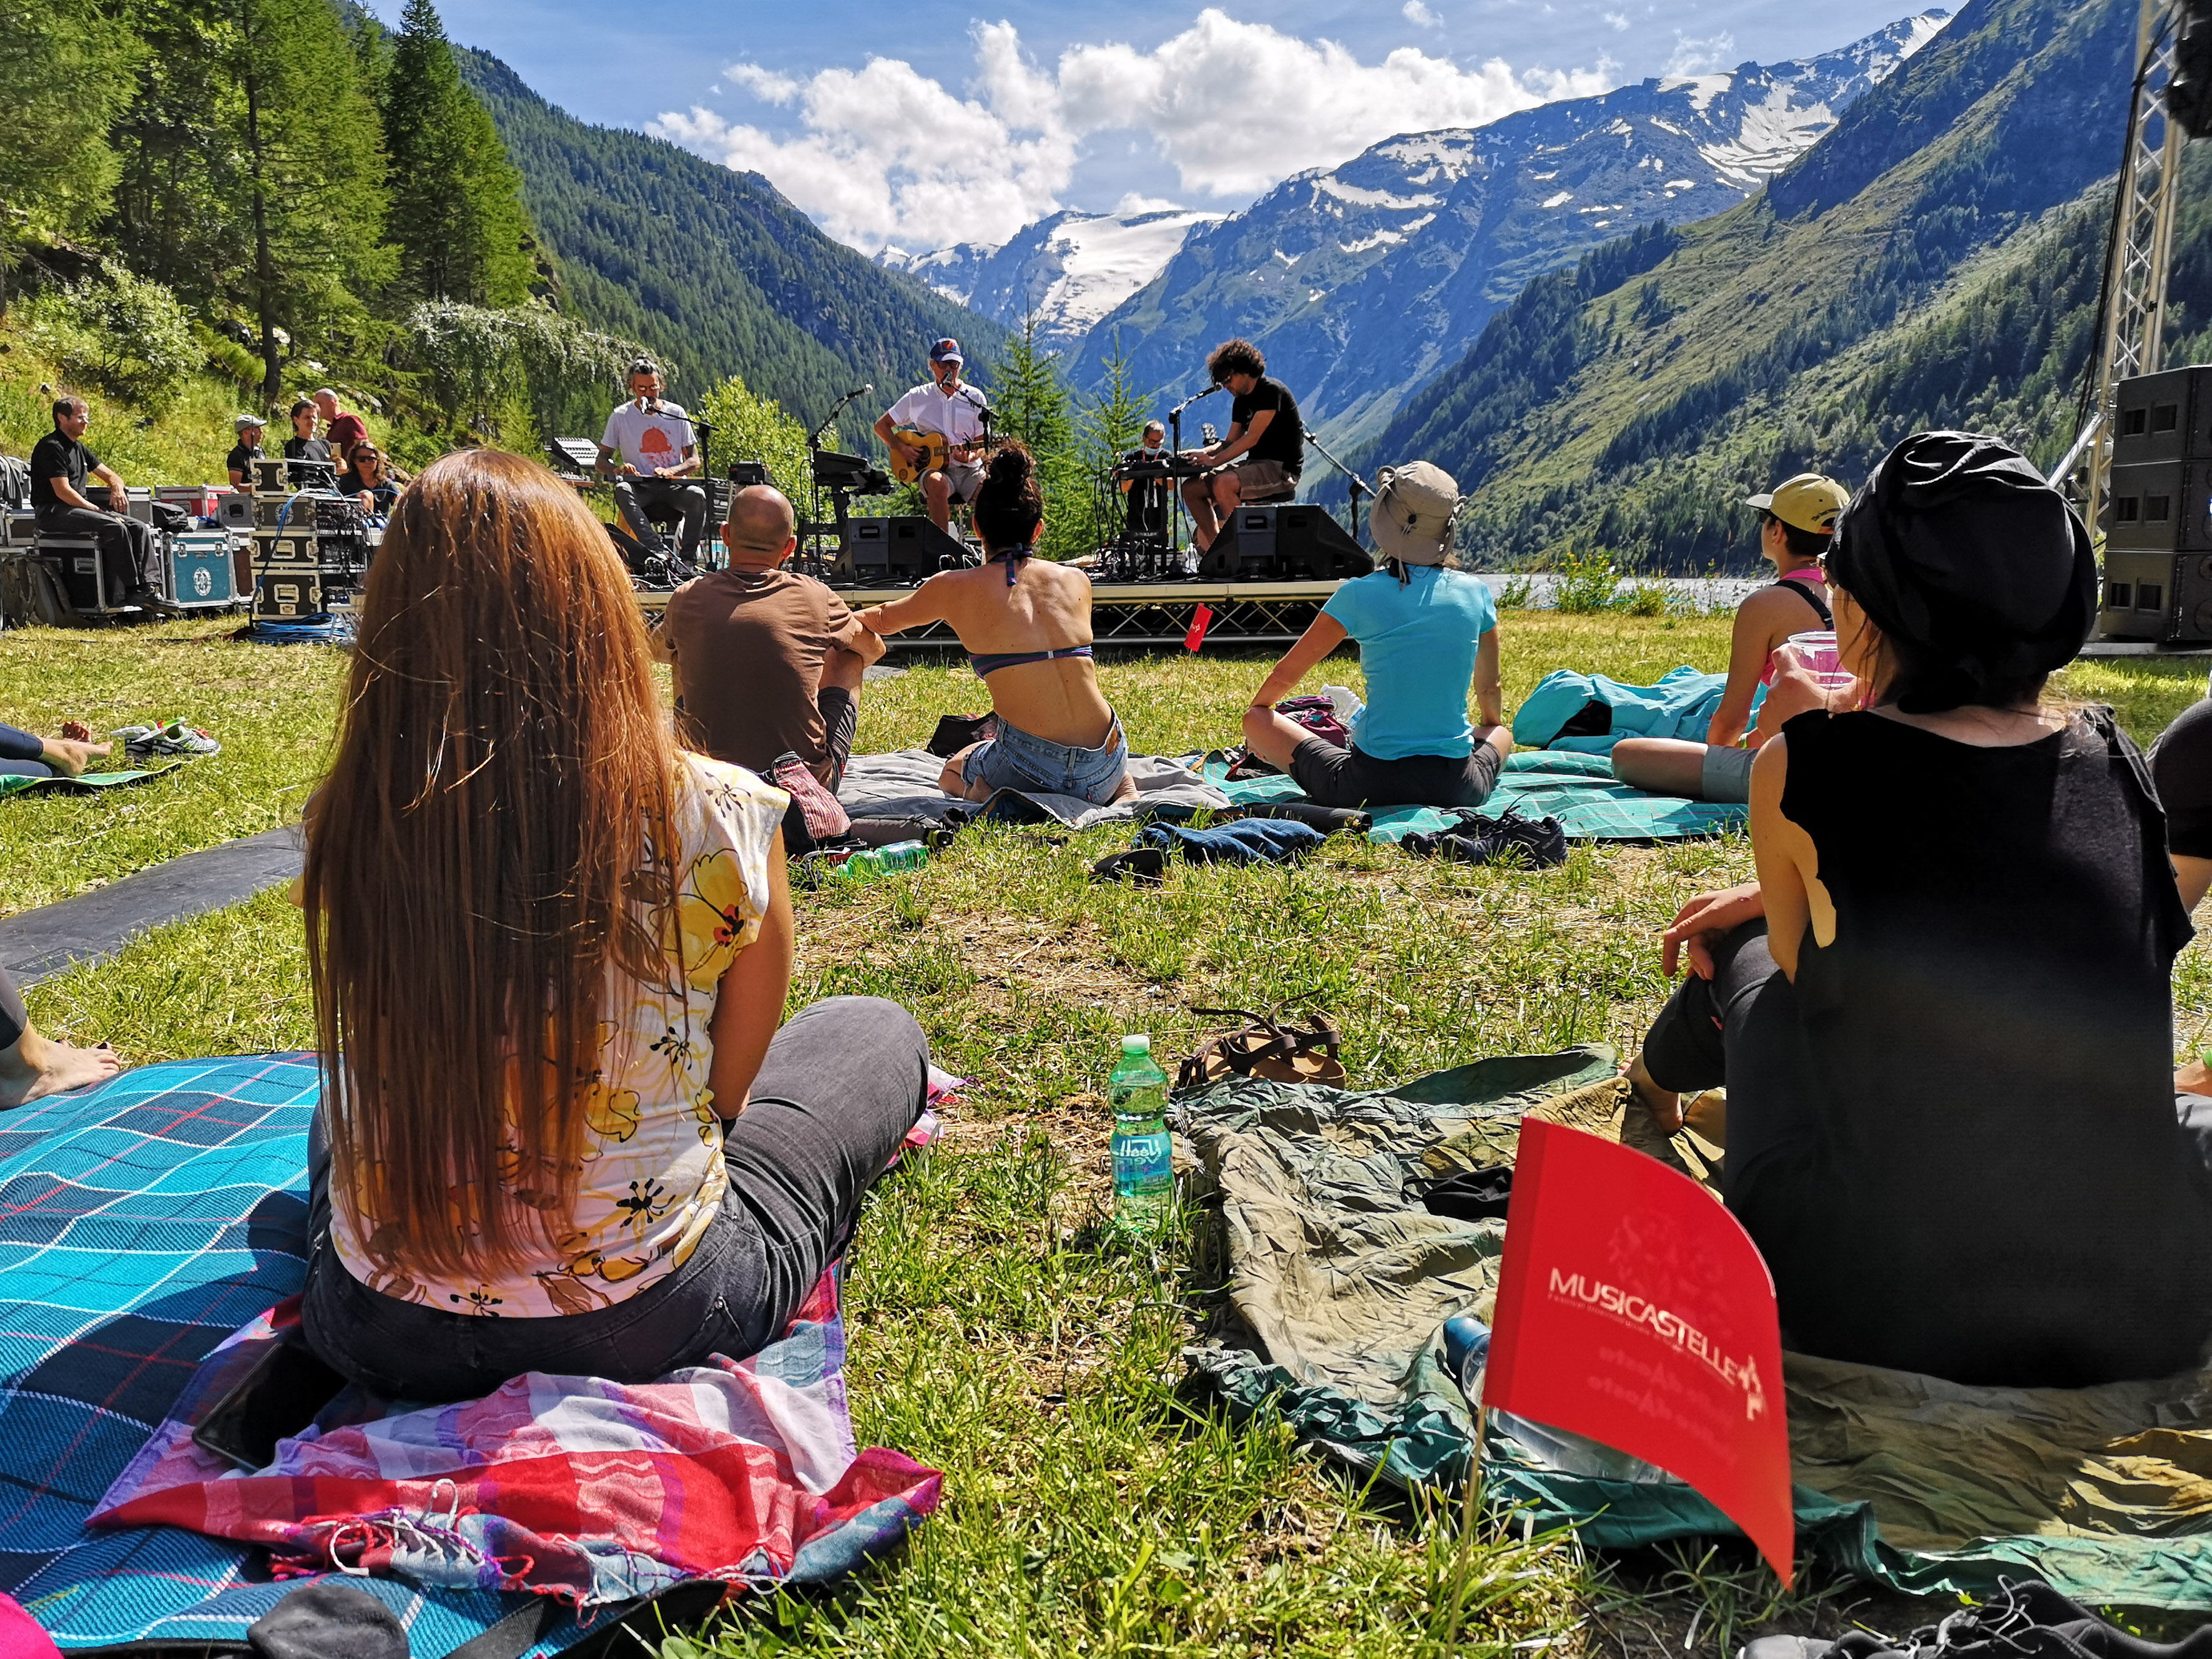 MUSICASTELLE. L'estate in Valle d'Aosta con i concerti gratuiti in quota